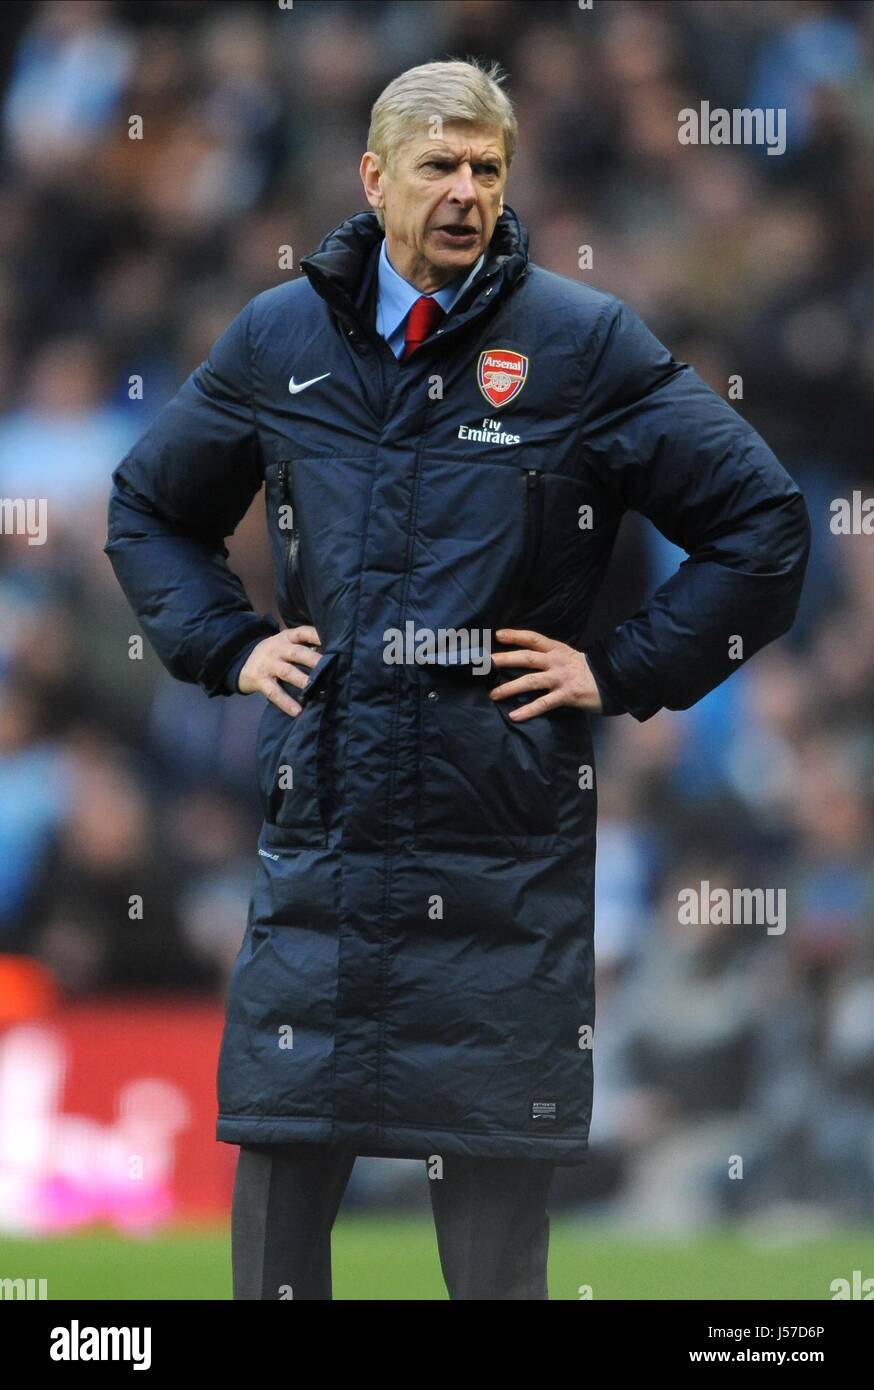 Arsene Wenger Arsenal Fc Manager Arsenal Fc Manager Etihad Stadium Stock Photo Alamy